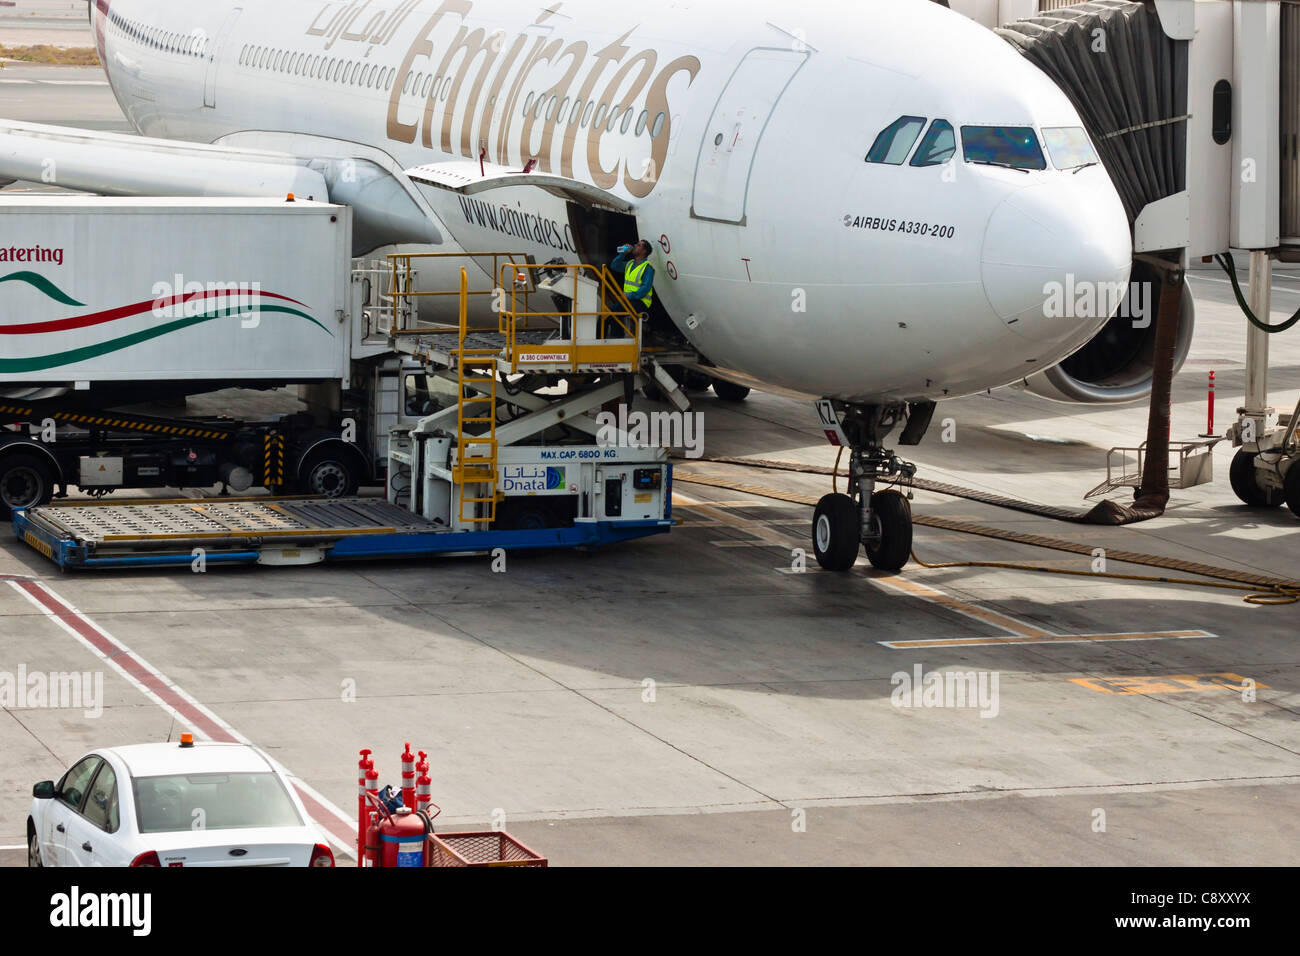 Detalle del Airbus A330-200, el aeropuerto internacional de Dubai, Emiratos Árabes Unidos. Foto de stock